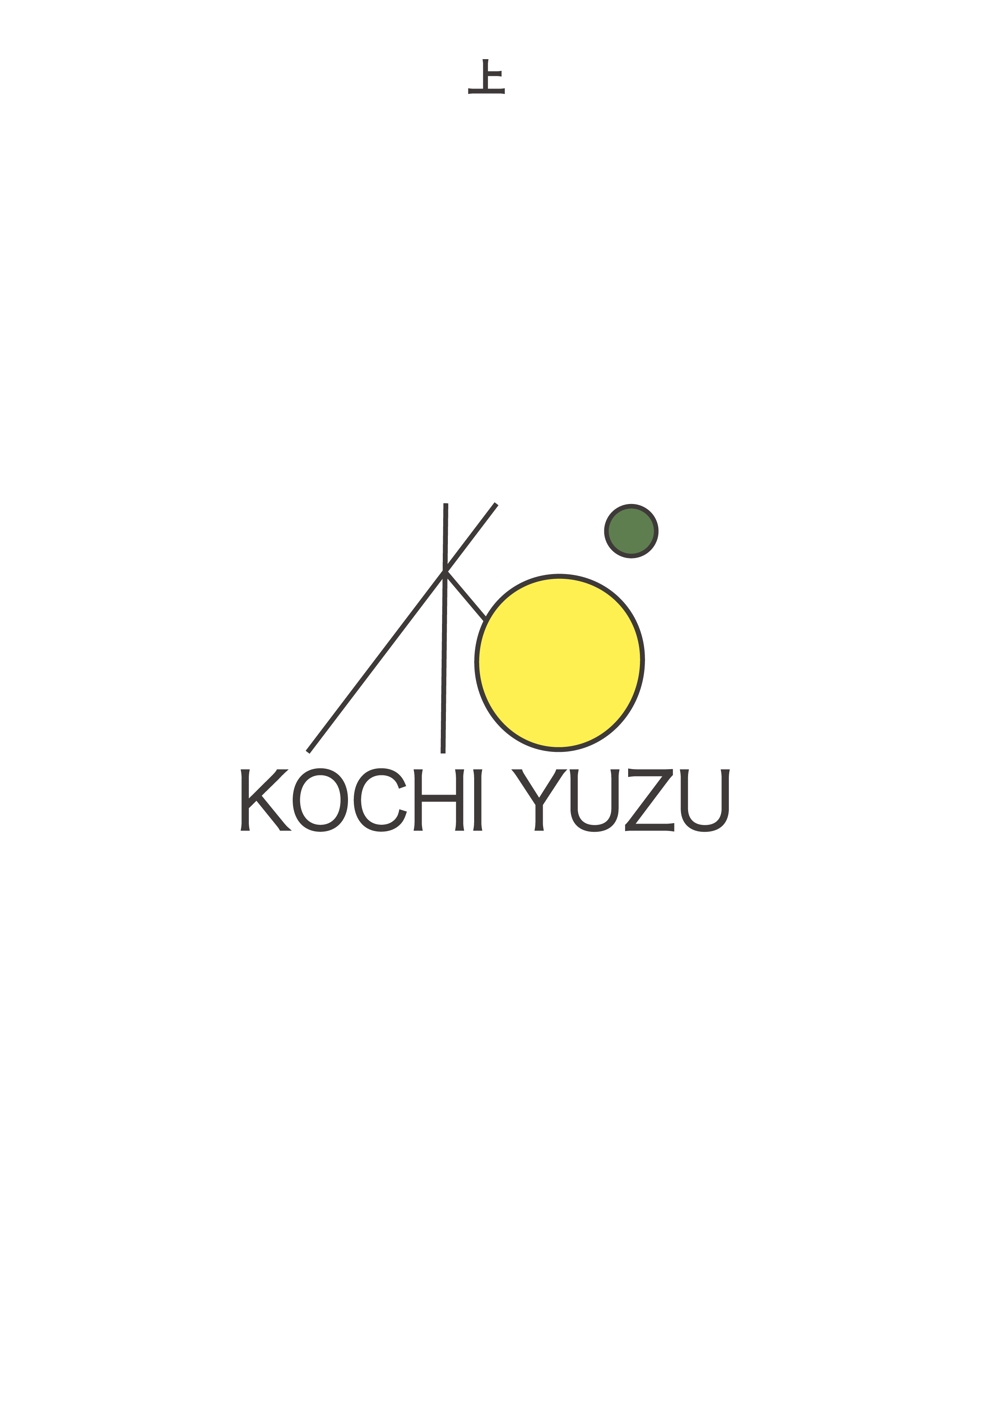 高知県産ゆずのロゴデザイン